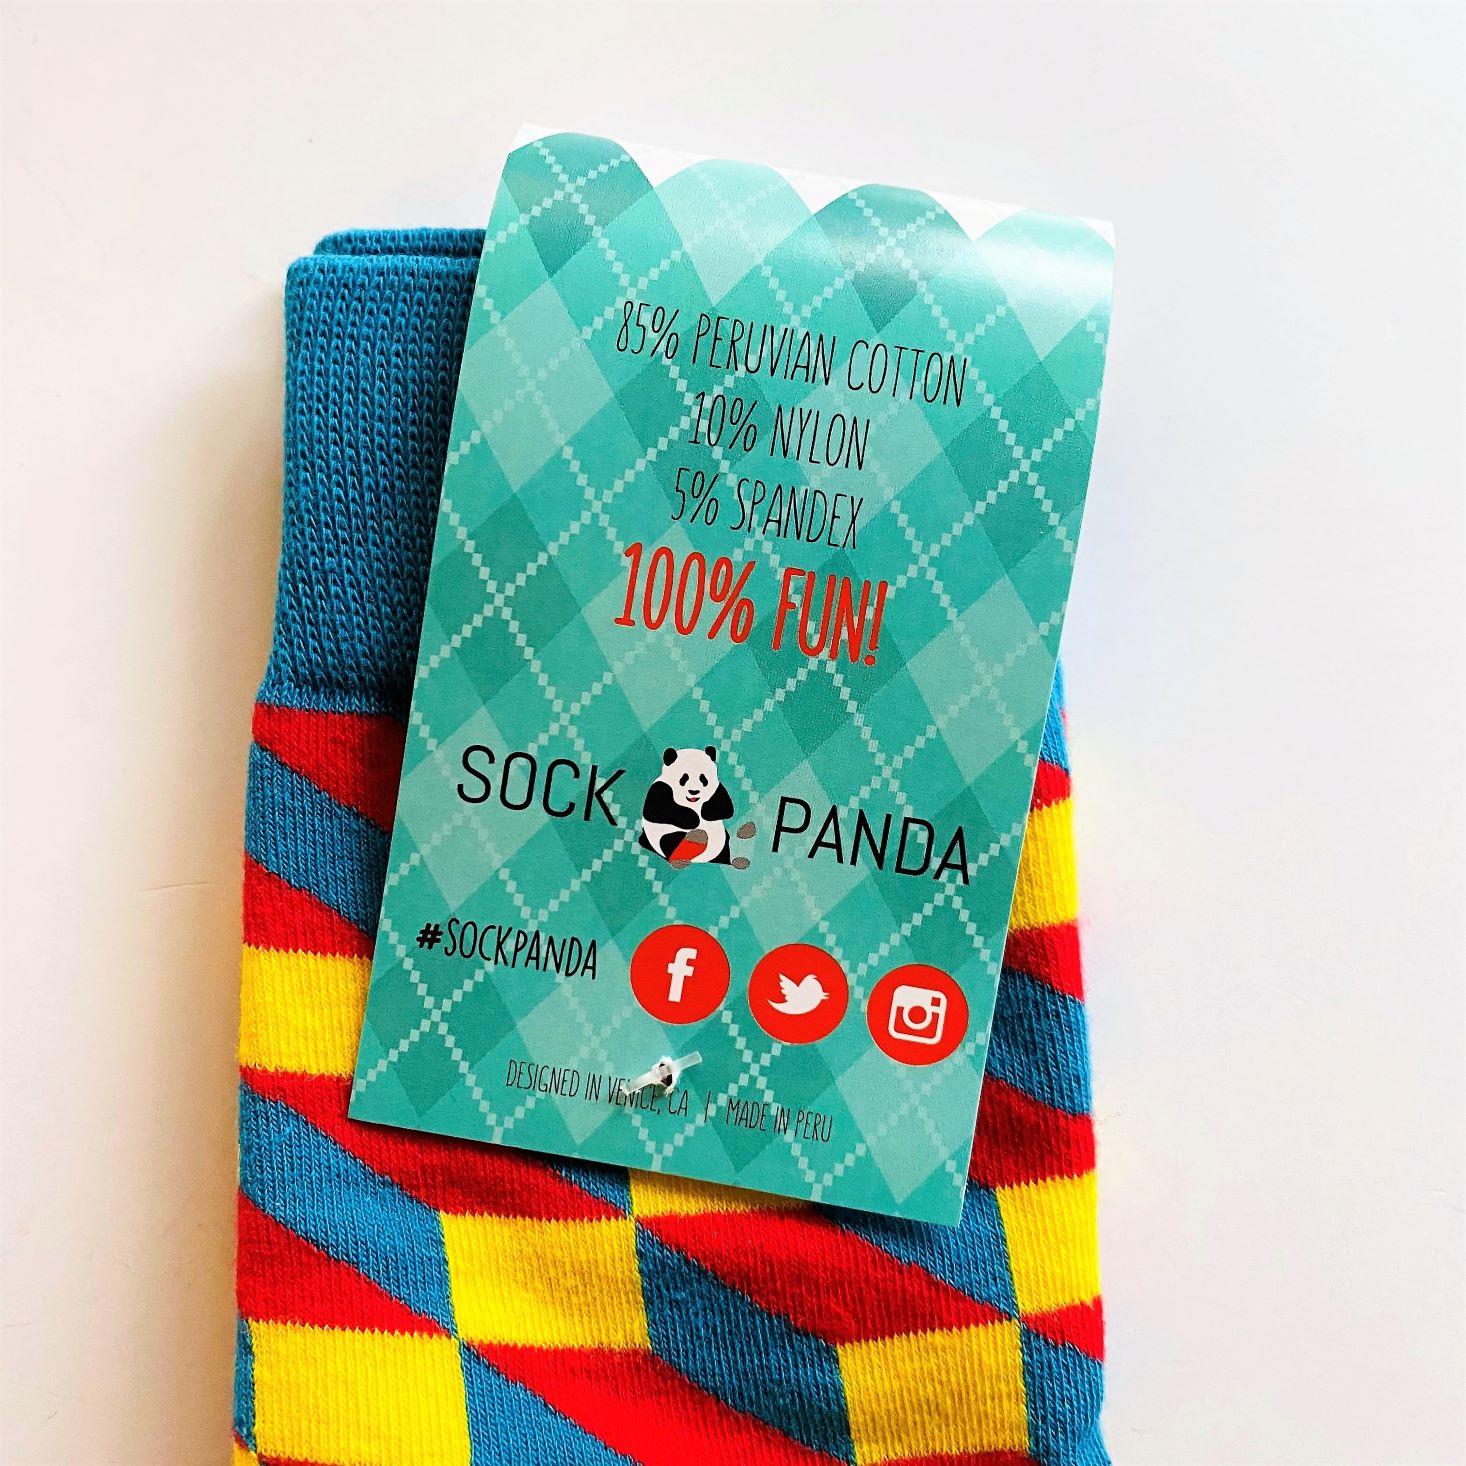 socks from sock panda